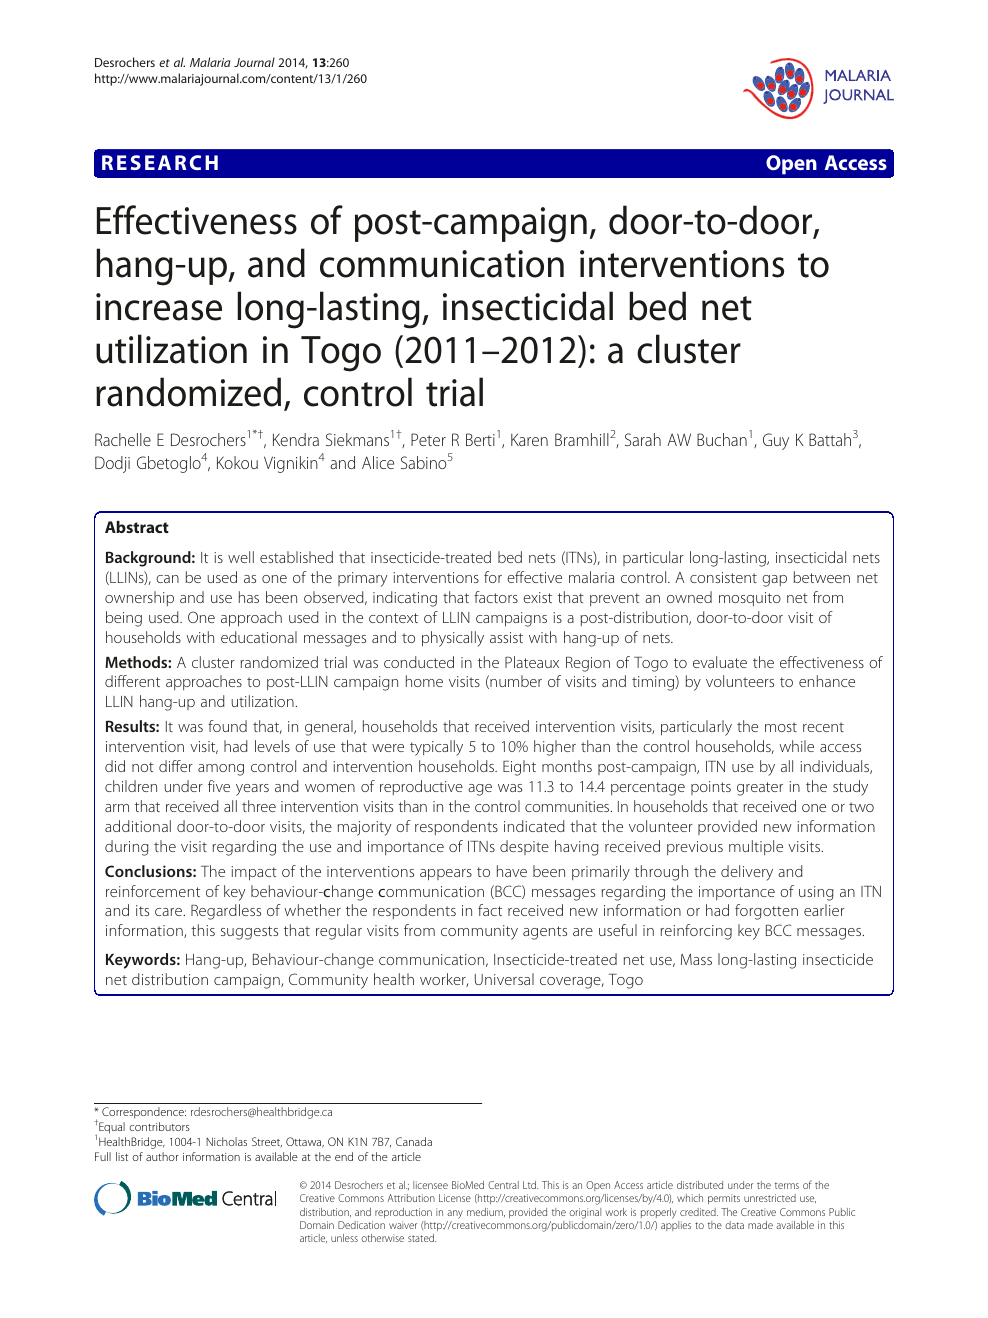 Effectiveness Of Post Campaign Door To Door Hang Up And